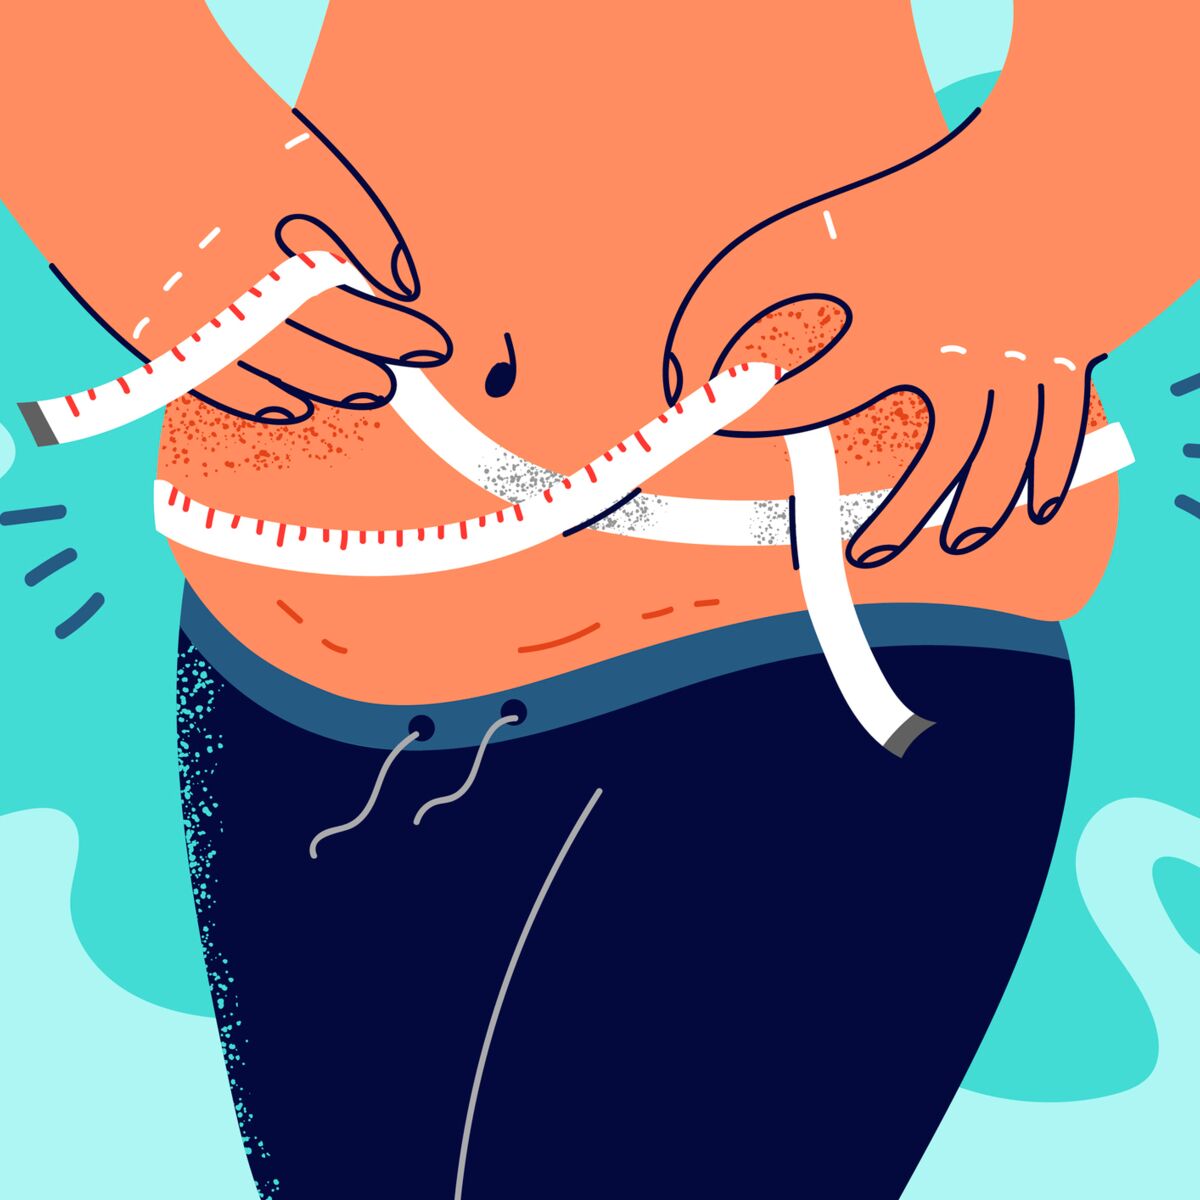 La graisse viscérale est-elle dangereuse ? Comment la perdre